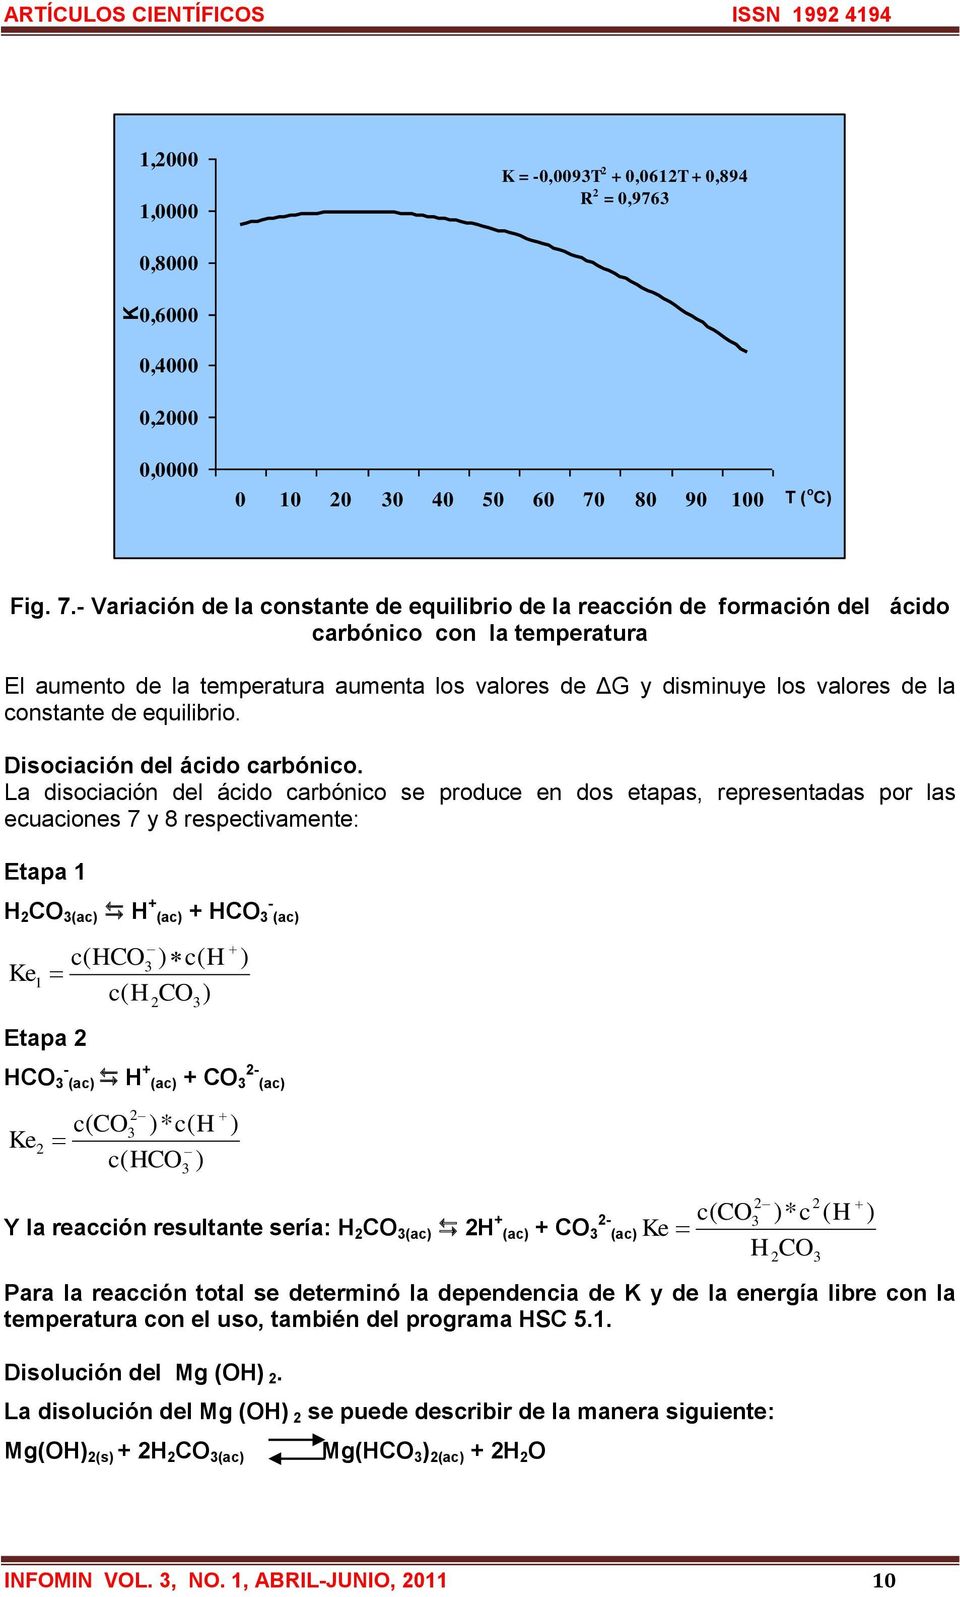 - Variación de la constante de equilibrio de la reacción de formación del ácido carbónico con la temperatura El aumento de la temperatura aumenta los valores de ΔG y disminuye los valores de la